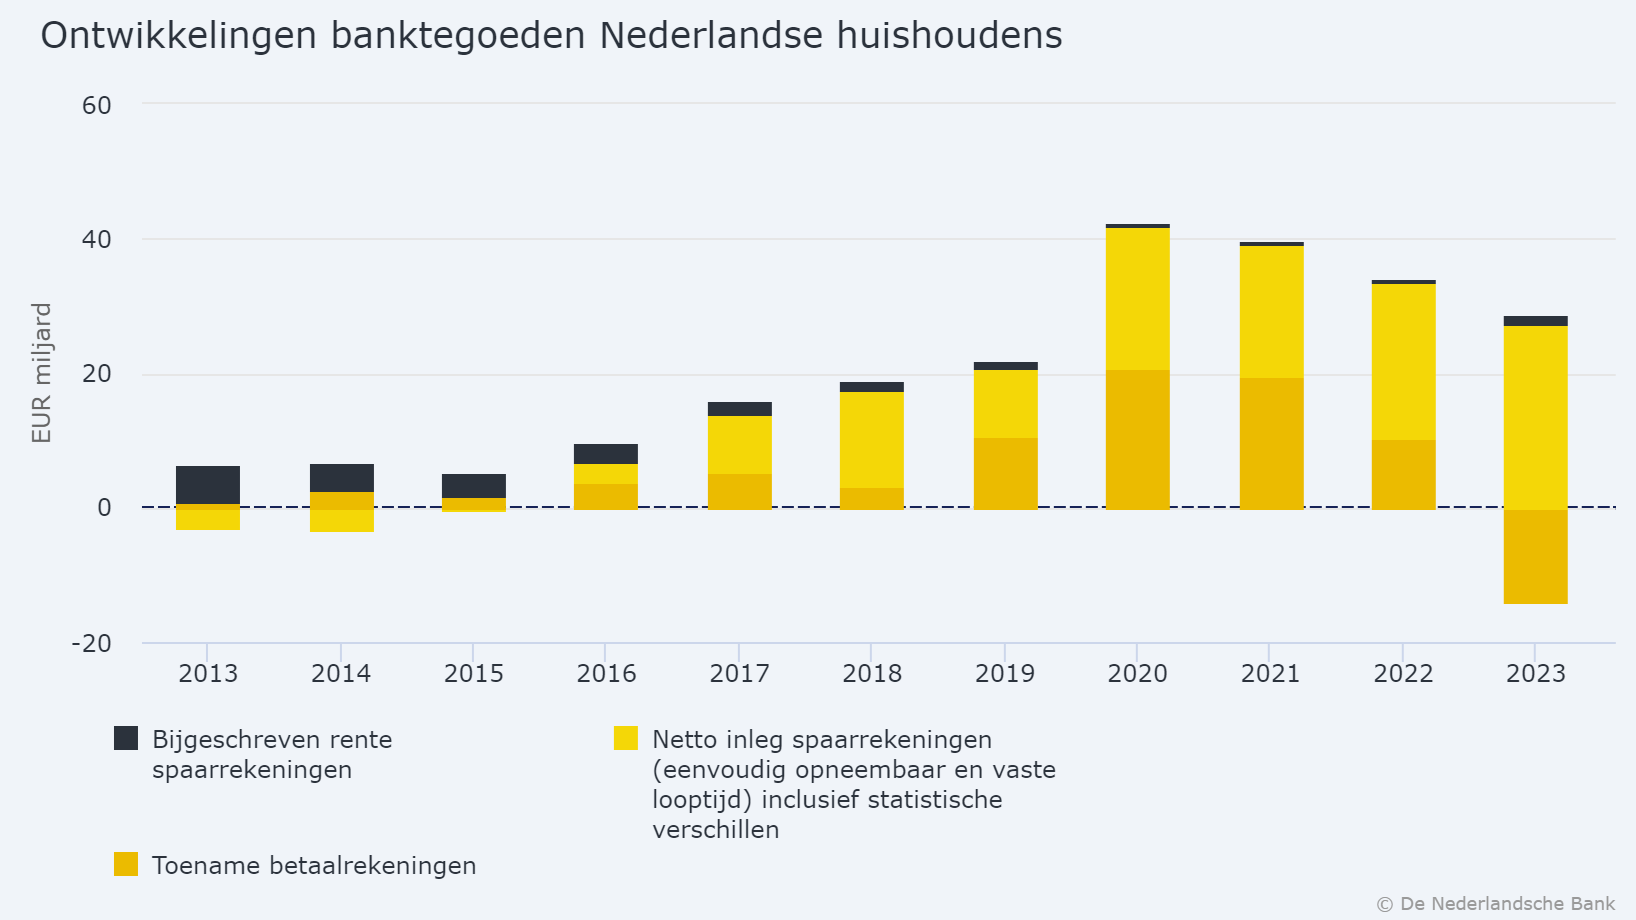 Nederlandse huishoudens haalden in 2023 liefst 14 miljard euro van hun betaalrekeningen af.